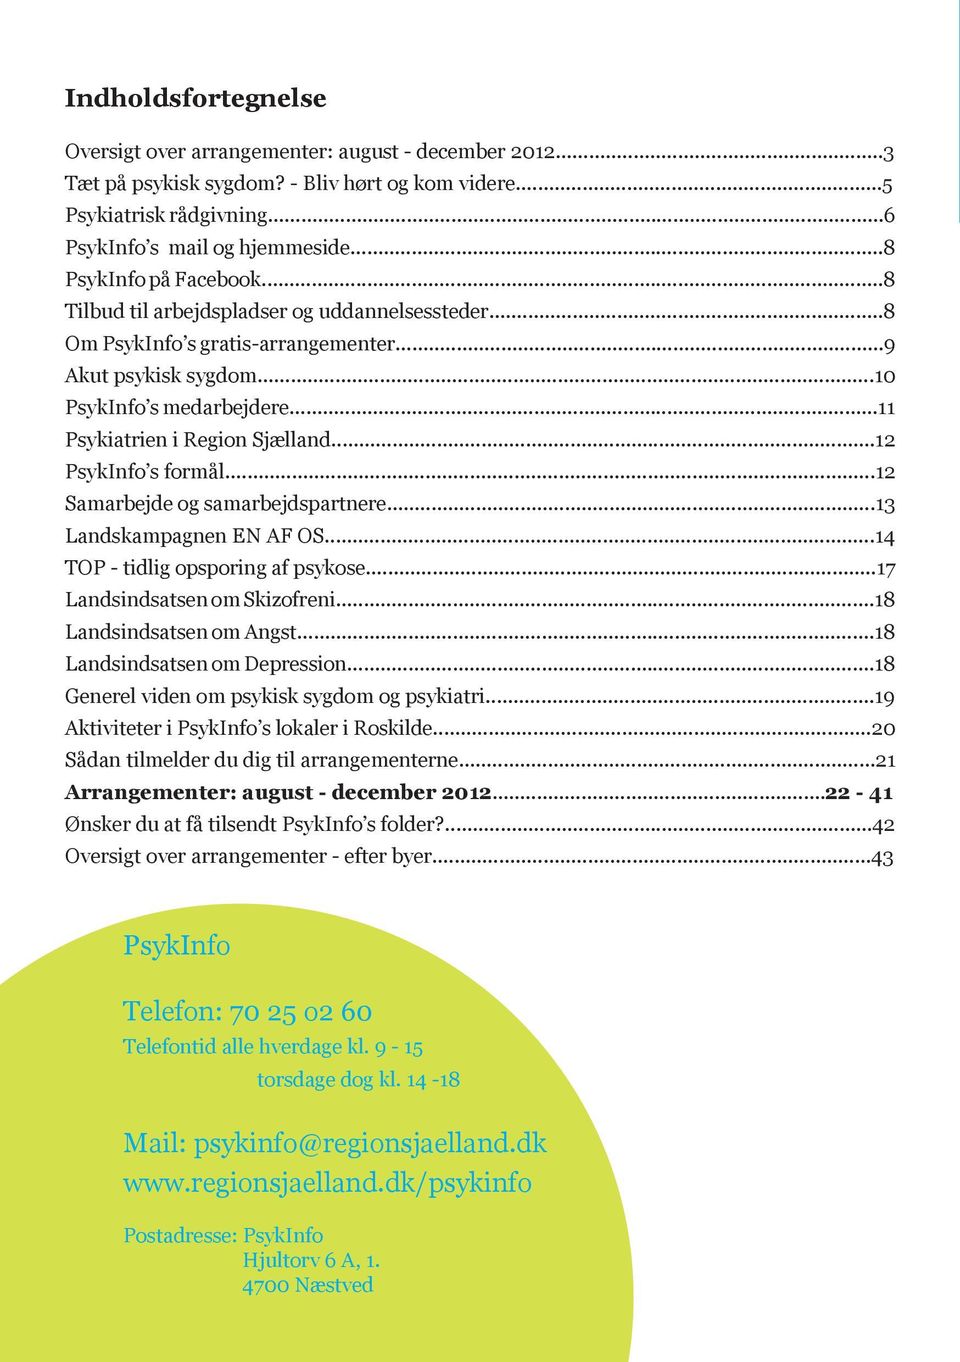 ..11 Psykiatrien i Region Sjælland...12 PsykInfo s formål...12 Samarbejde og samarbejdspartnere...13 Landskampagnen EN AF OS...14 TOP - tidlig opsporing af psykose...17 Landsindsatsen om Skizofreni.